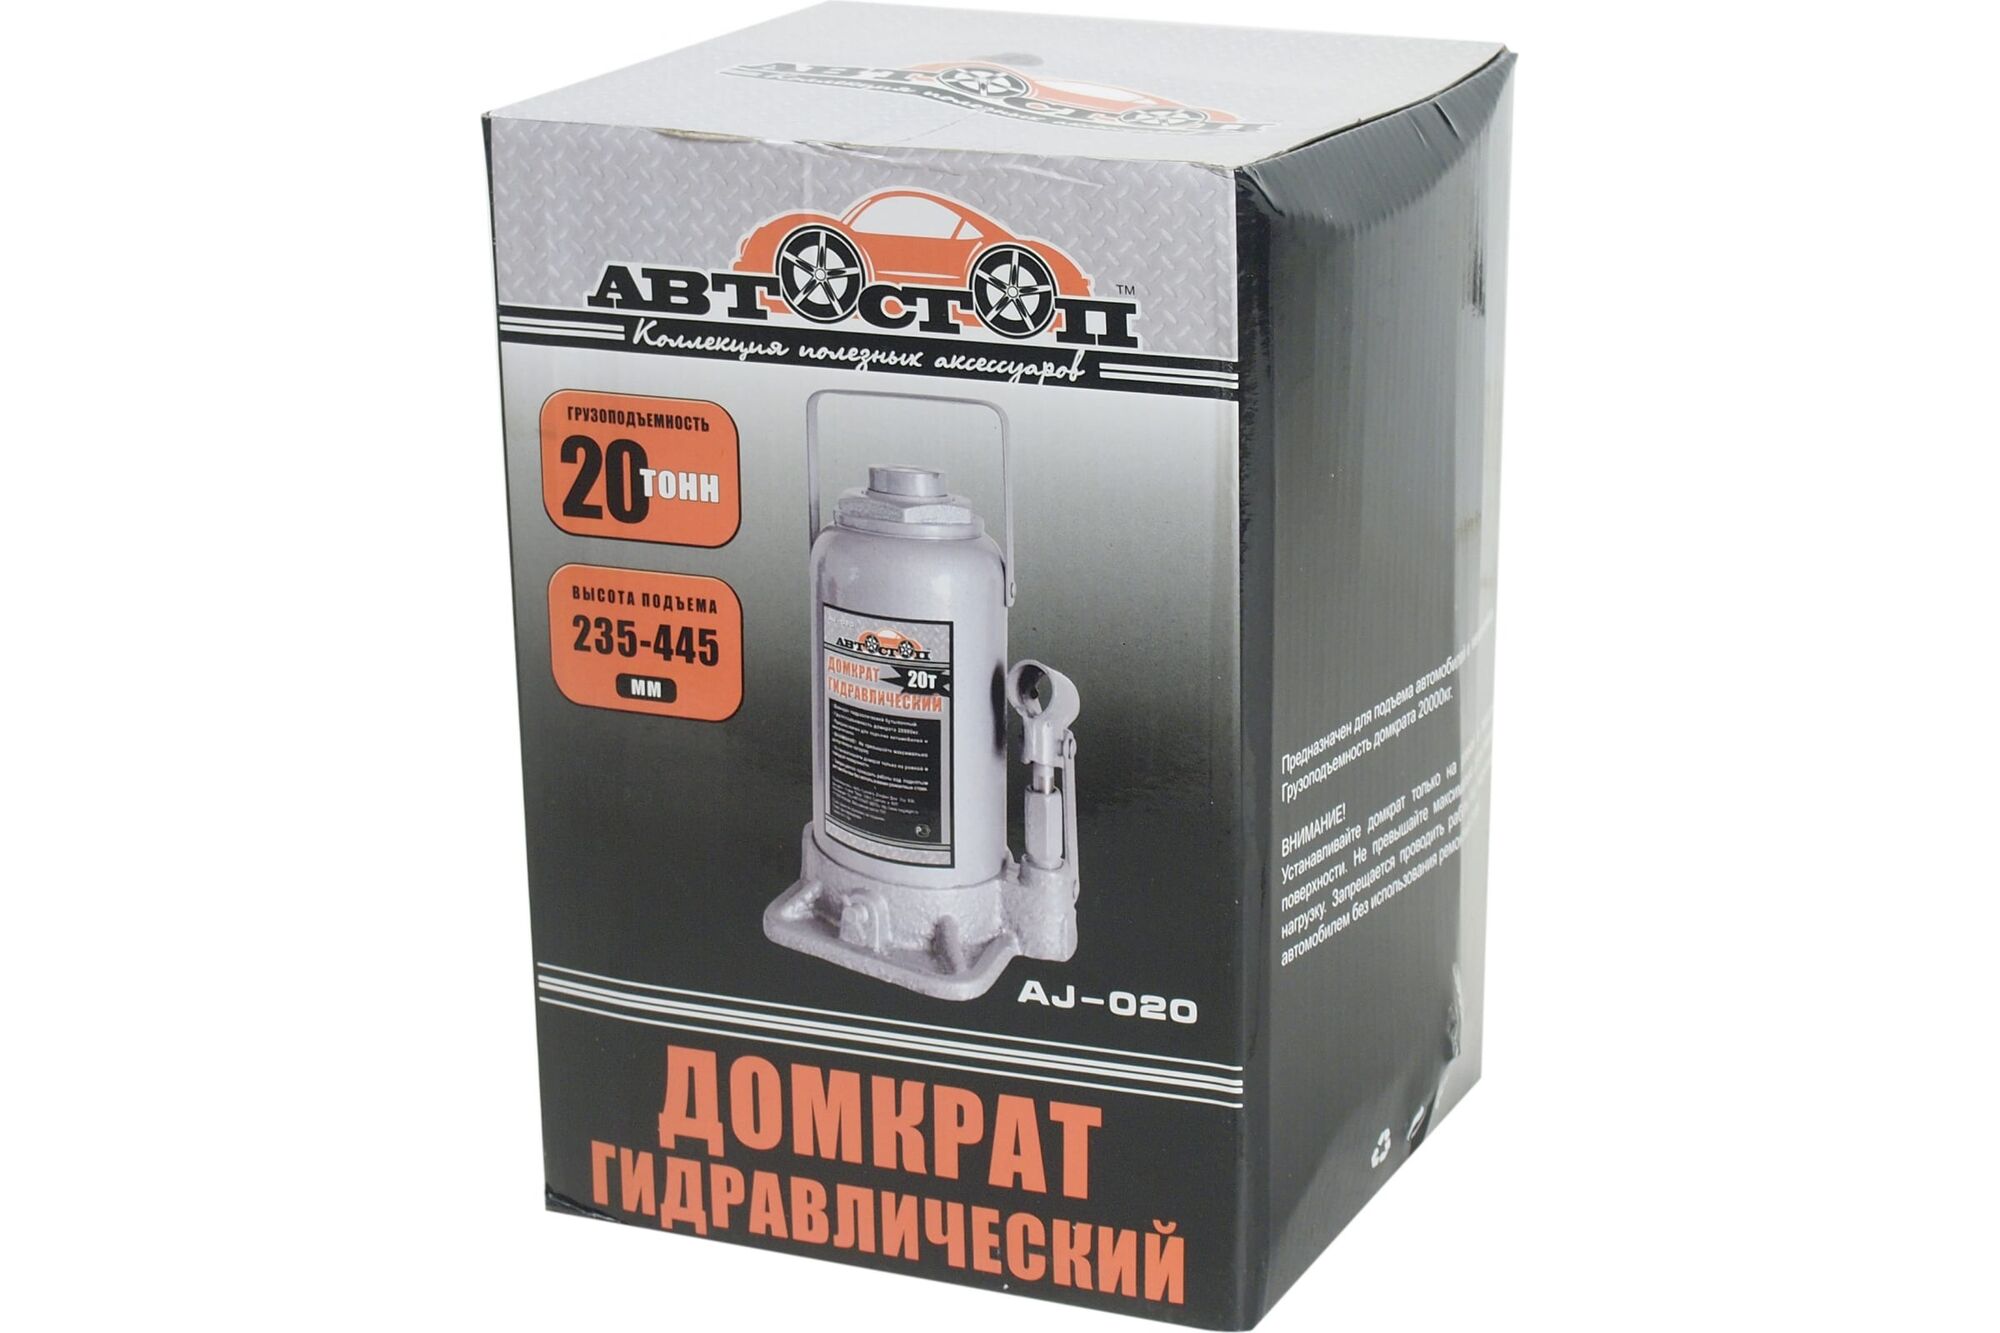 Гидравлический бутылочный домкрат 20 т АВТОСТОП AJ-020